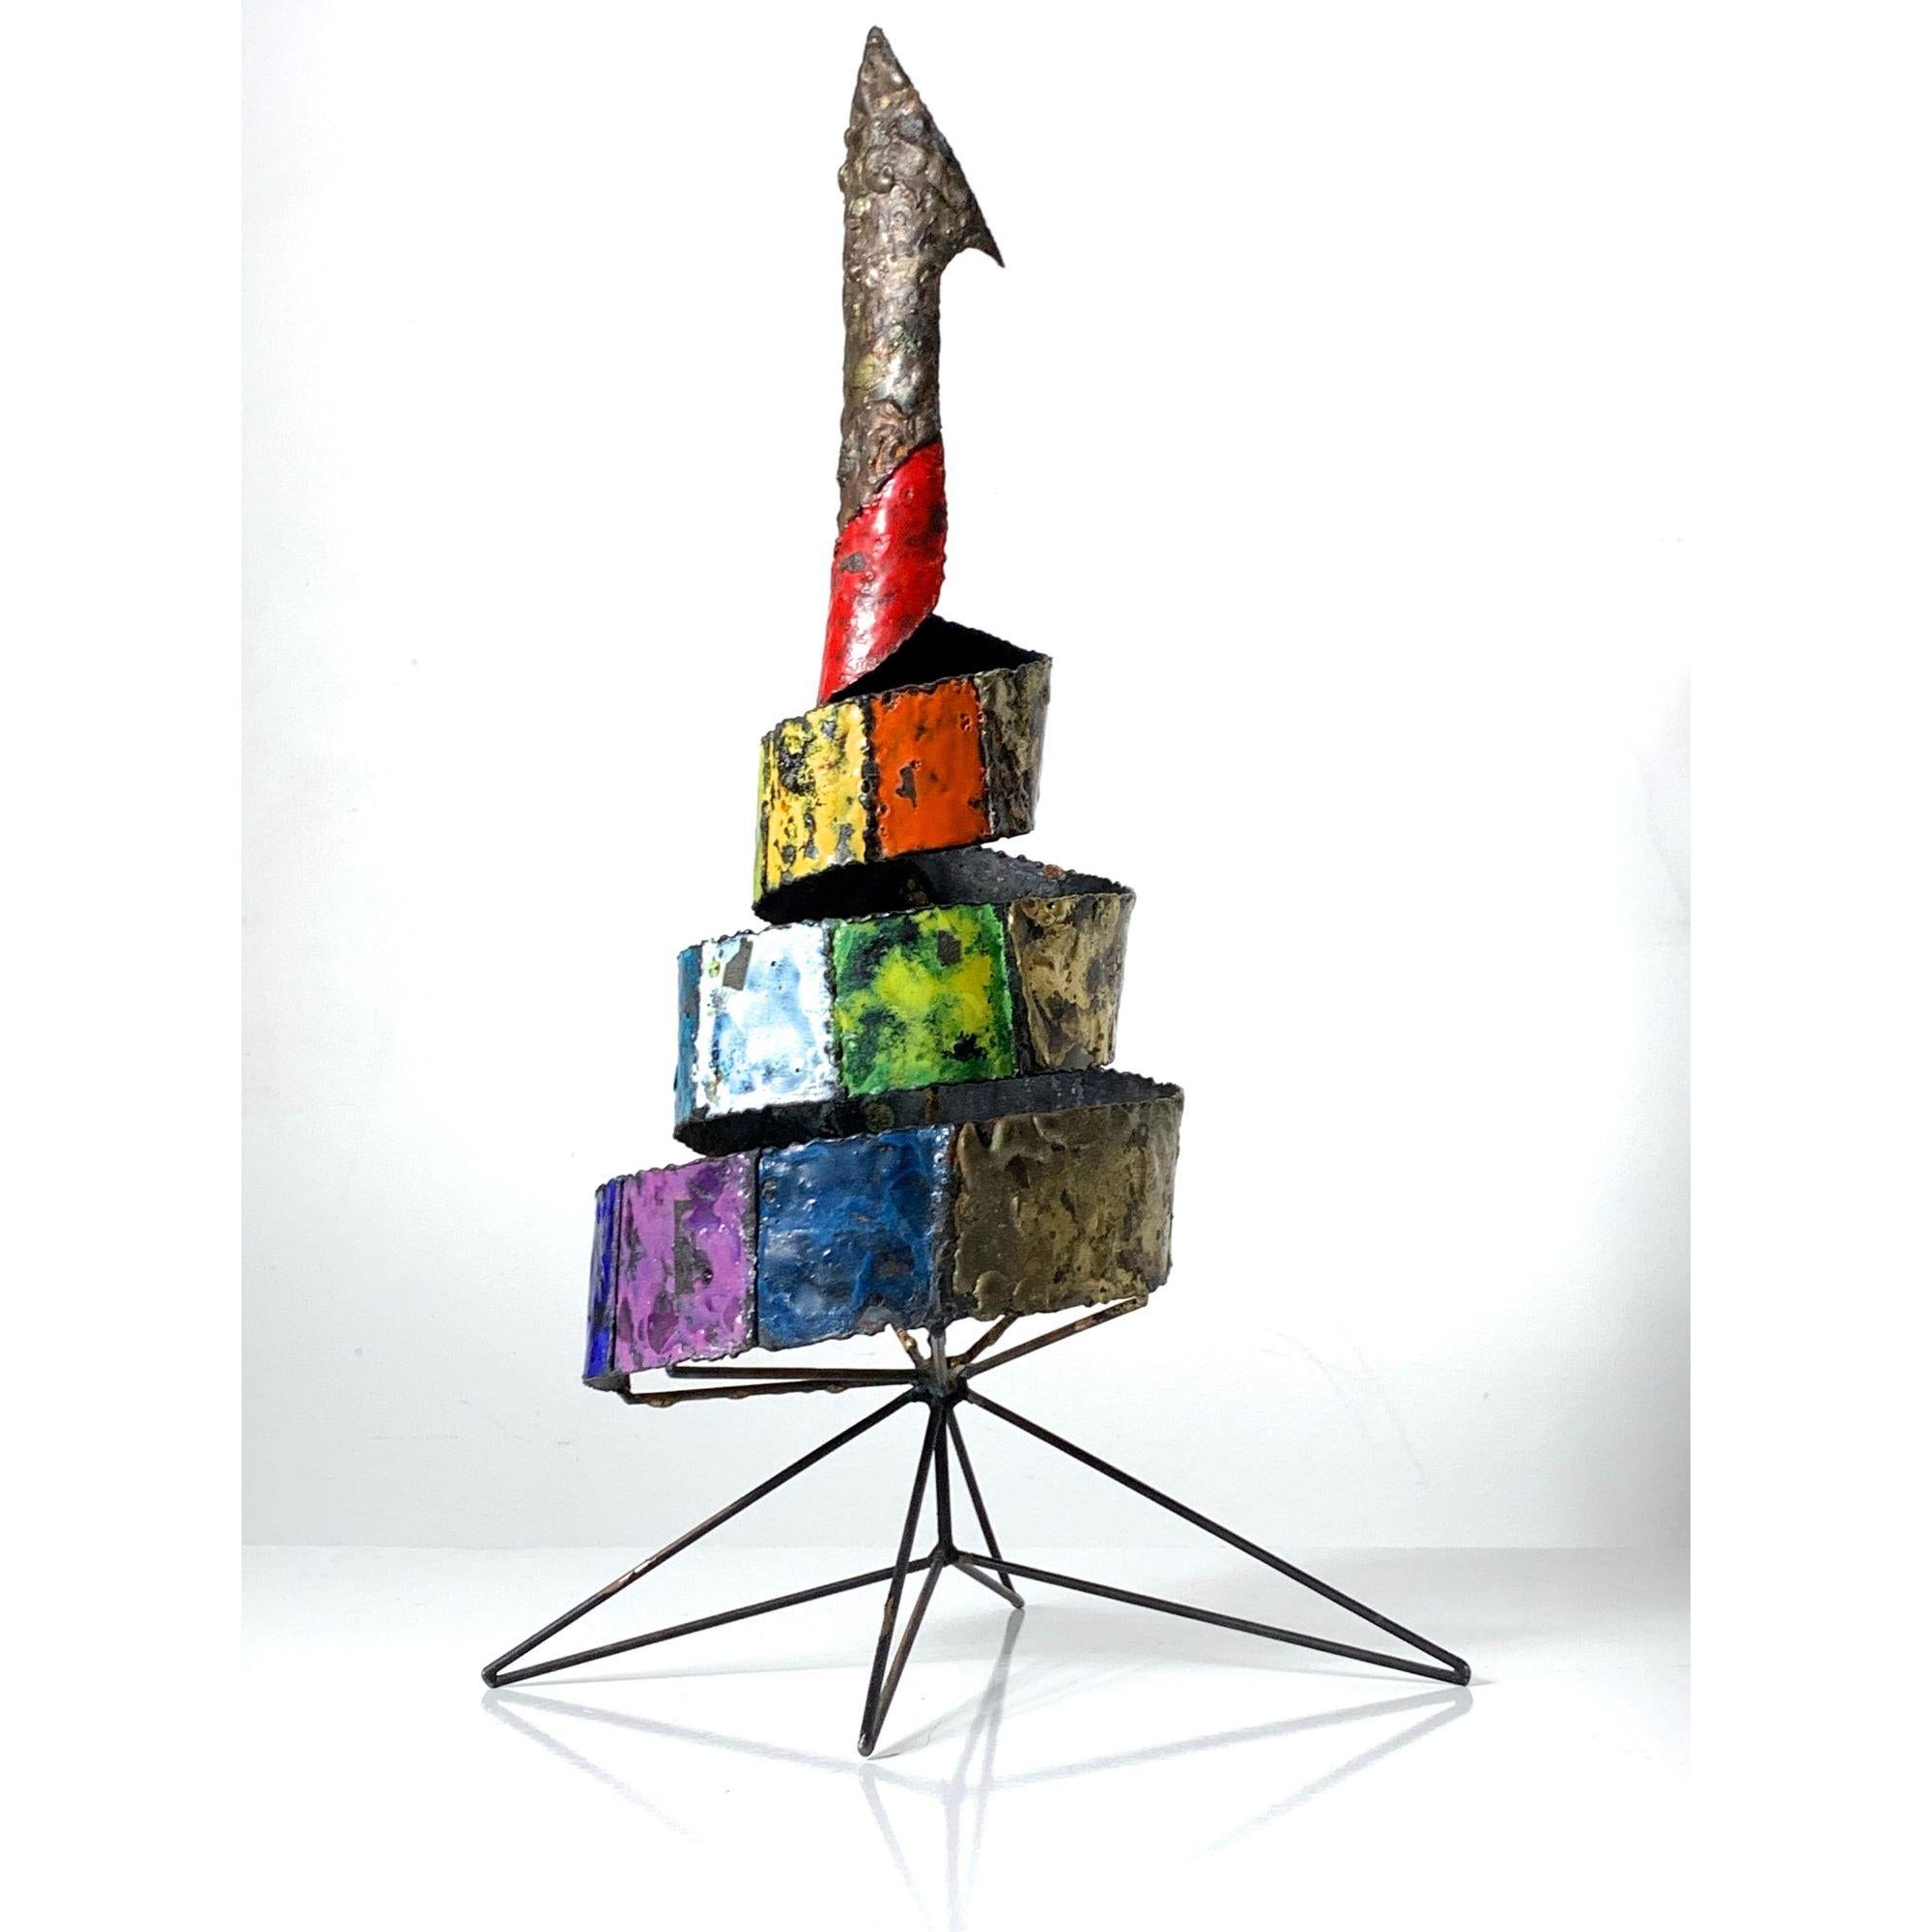 Sculpture abstraite en métal émaillé Vintage 1960s

Sculpture abstraite unique en métal datant des années 1960. 
Forme de ruban en spirale avec des blocs colorés d'émail appliqué et de laiton fondu sur une base en épingle à cheveux en fer.
Non